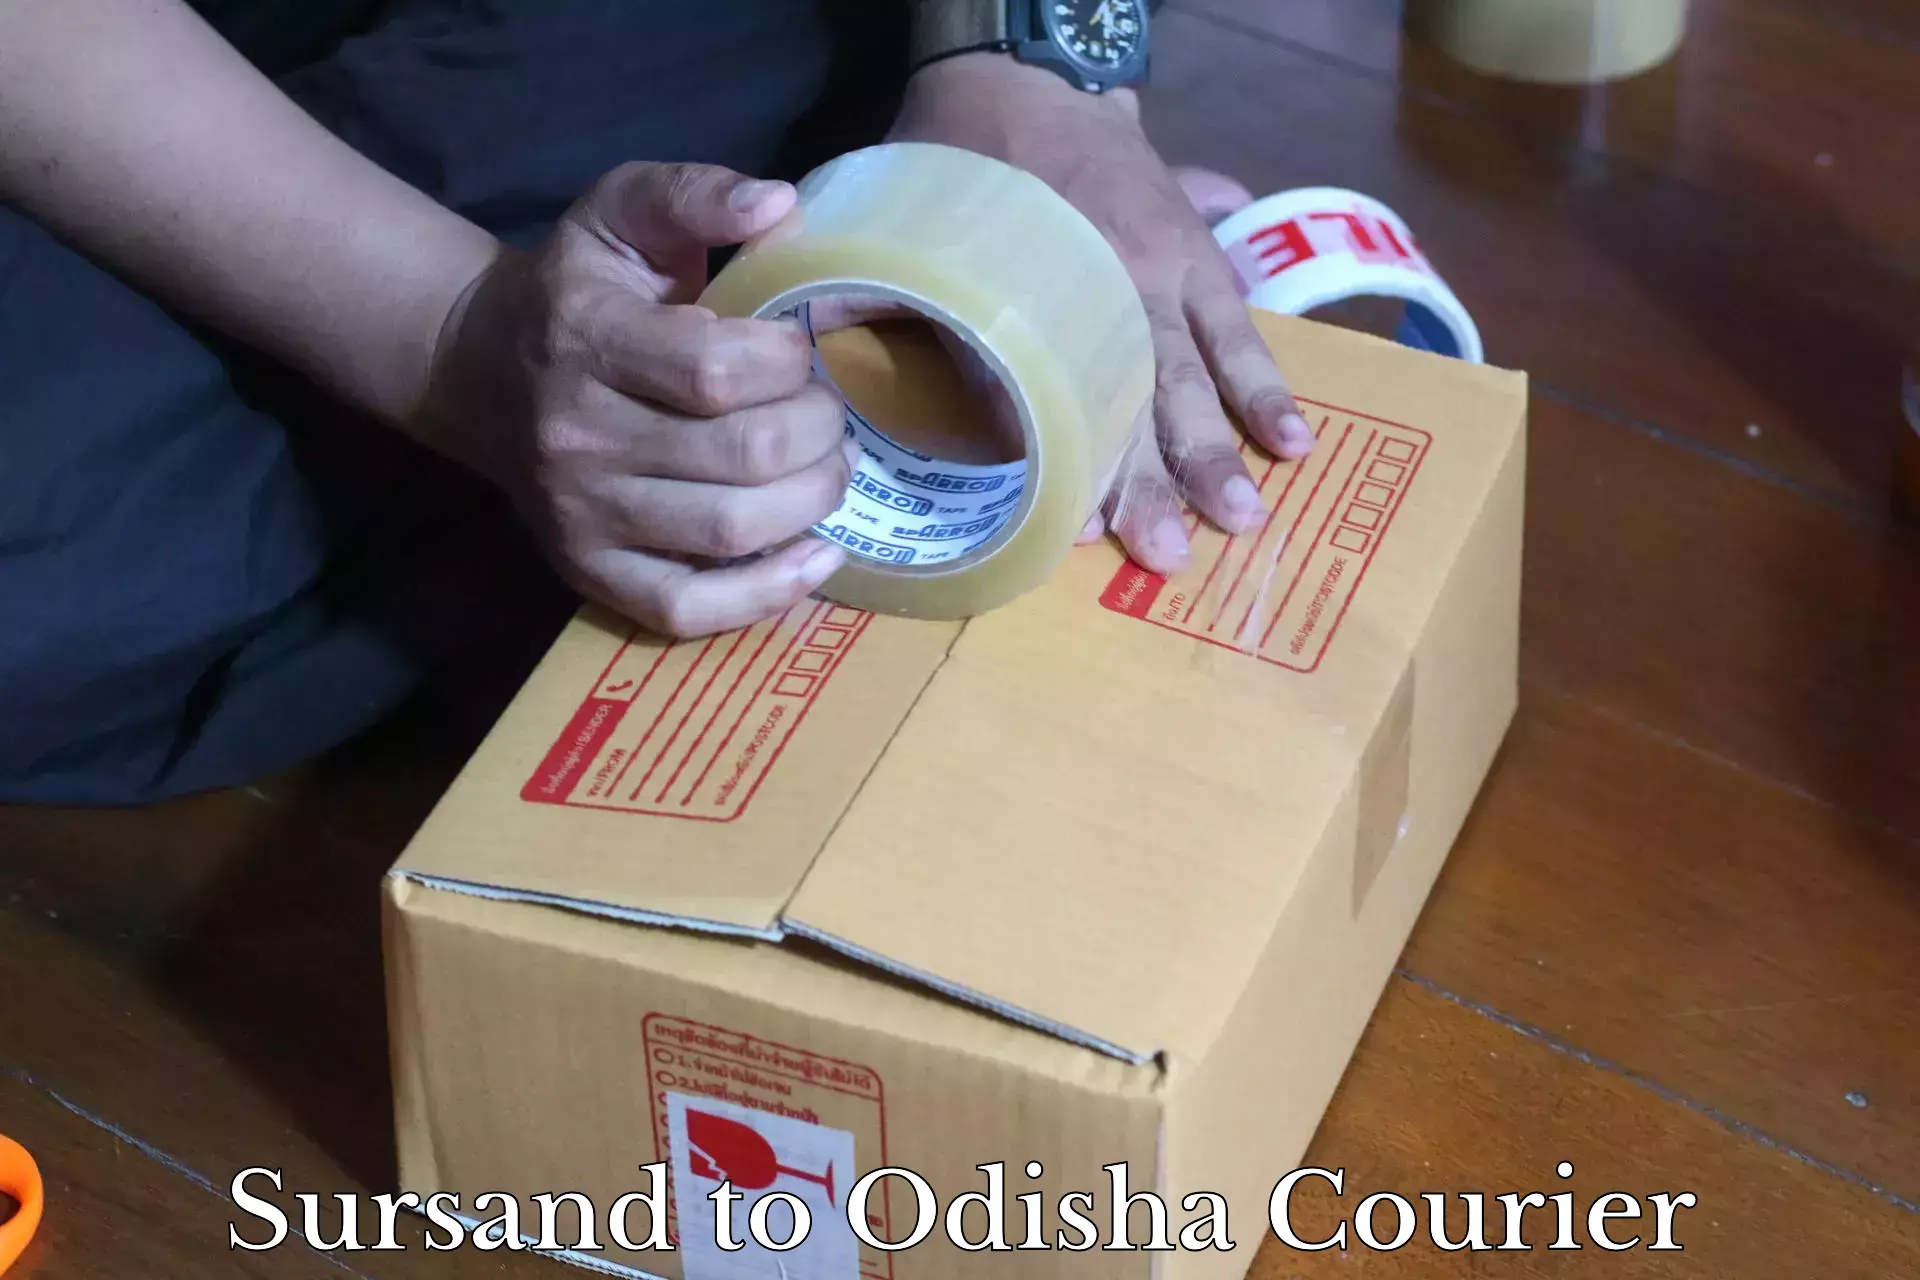 On-call courier service Sursand to Odisha